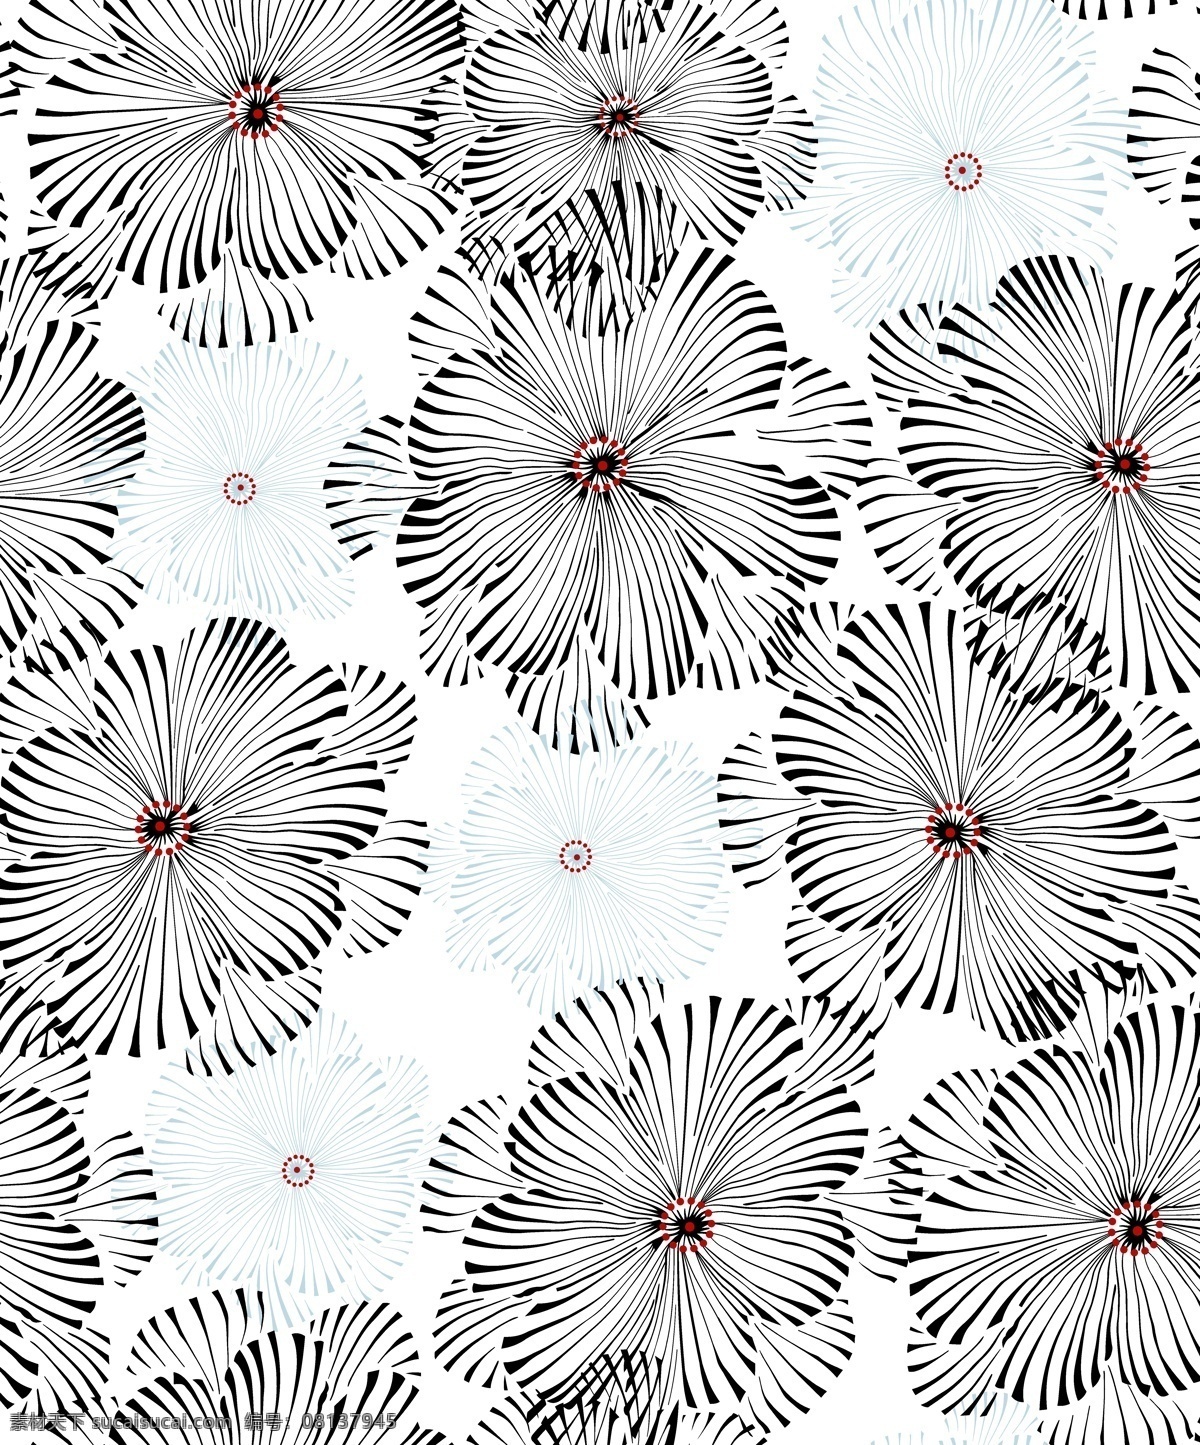 面料设计 墙纸设计 服装面料 花卉 植物 底纹 花边花纹 底纹边框